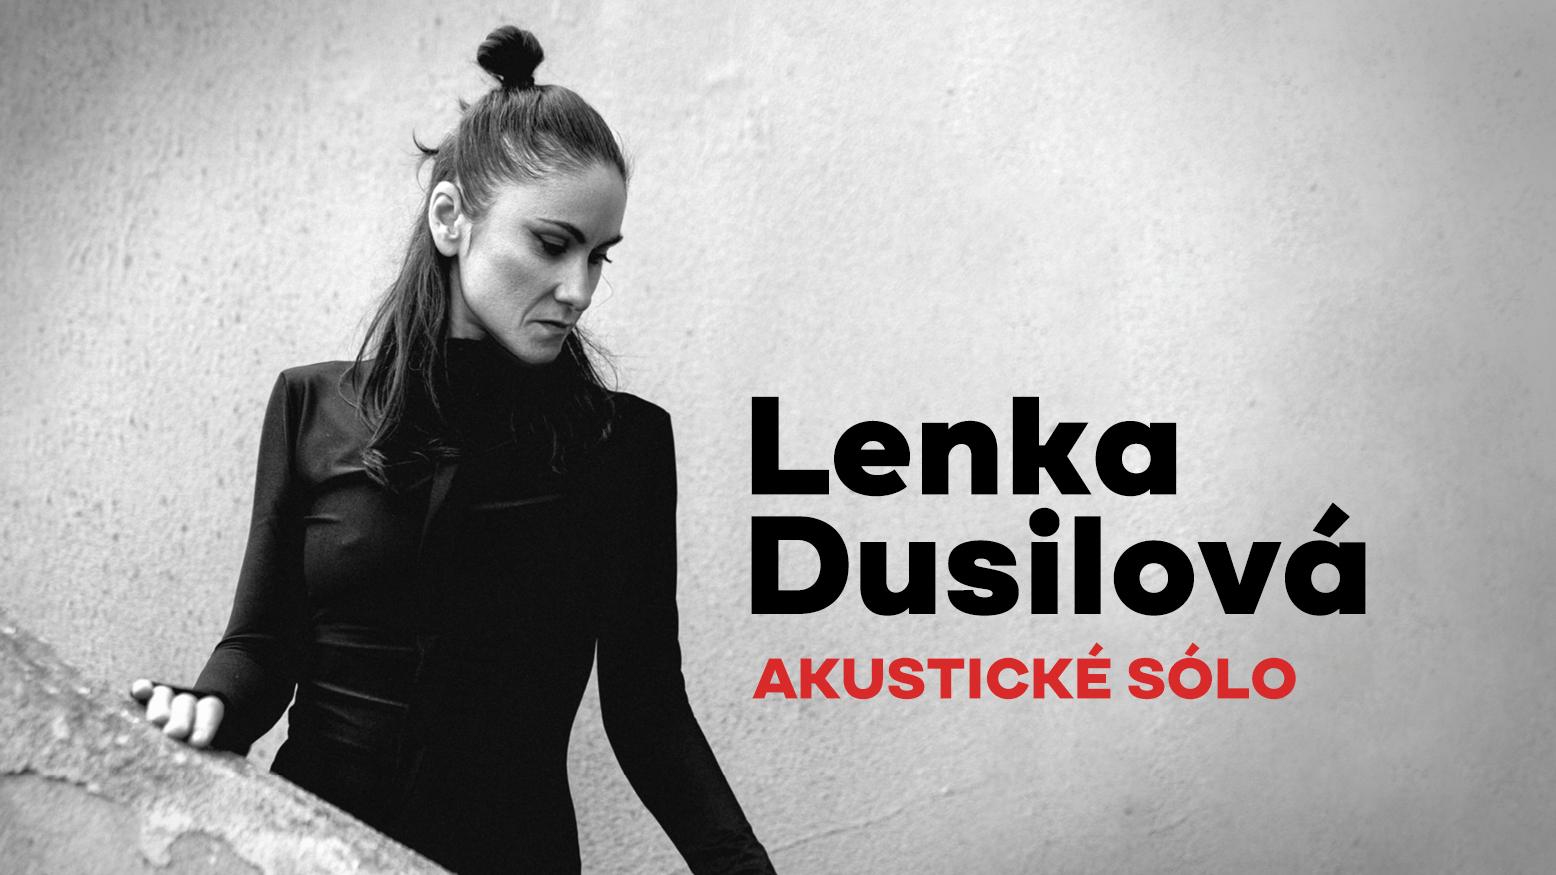 Koncert Lenka Dusilová akustické sólo